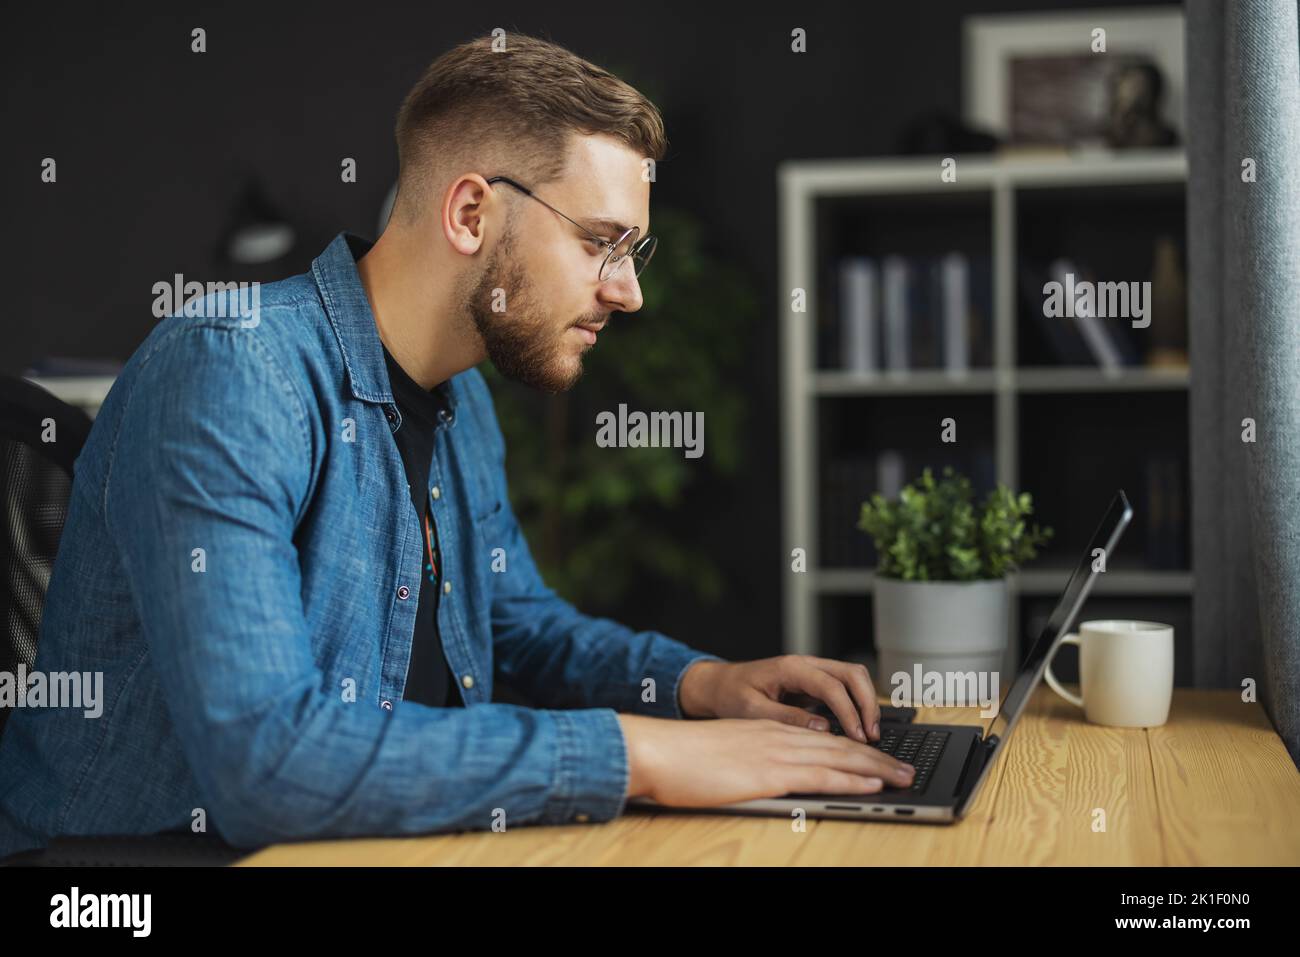 Man writing code Stock Photo